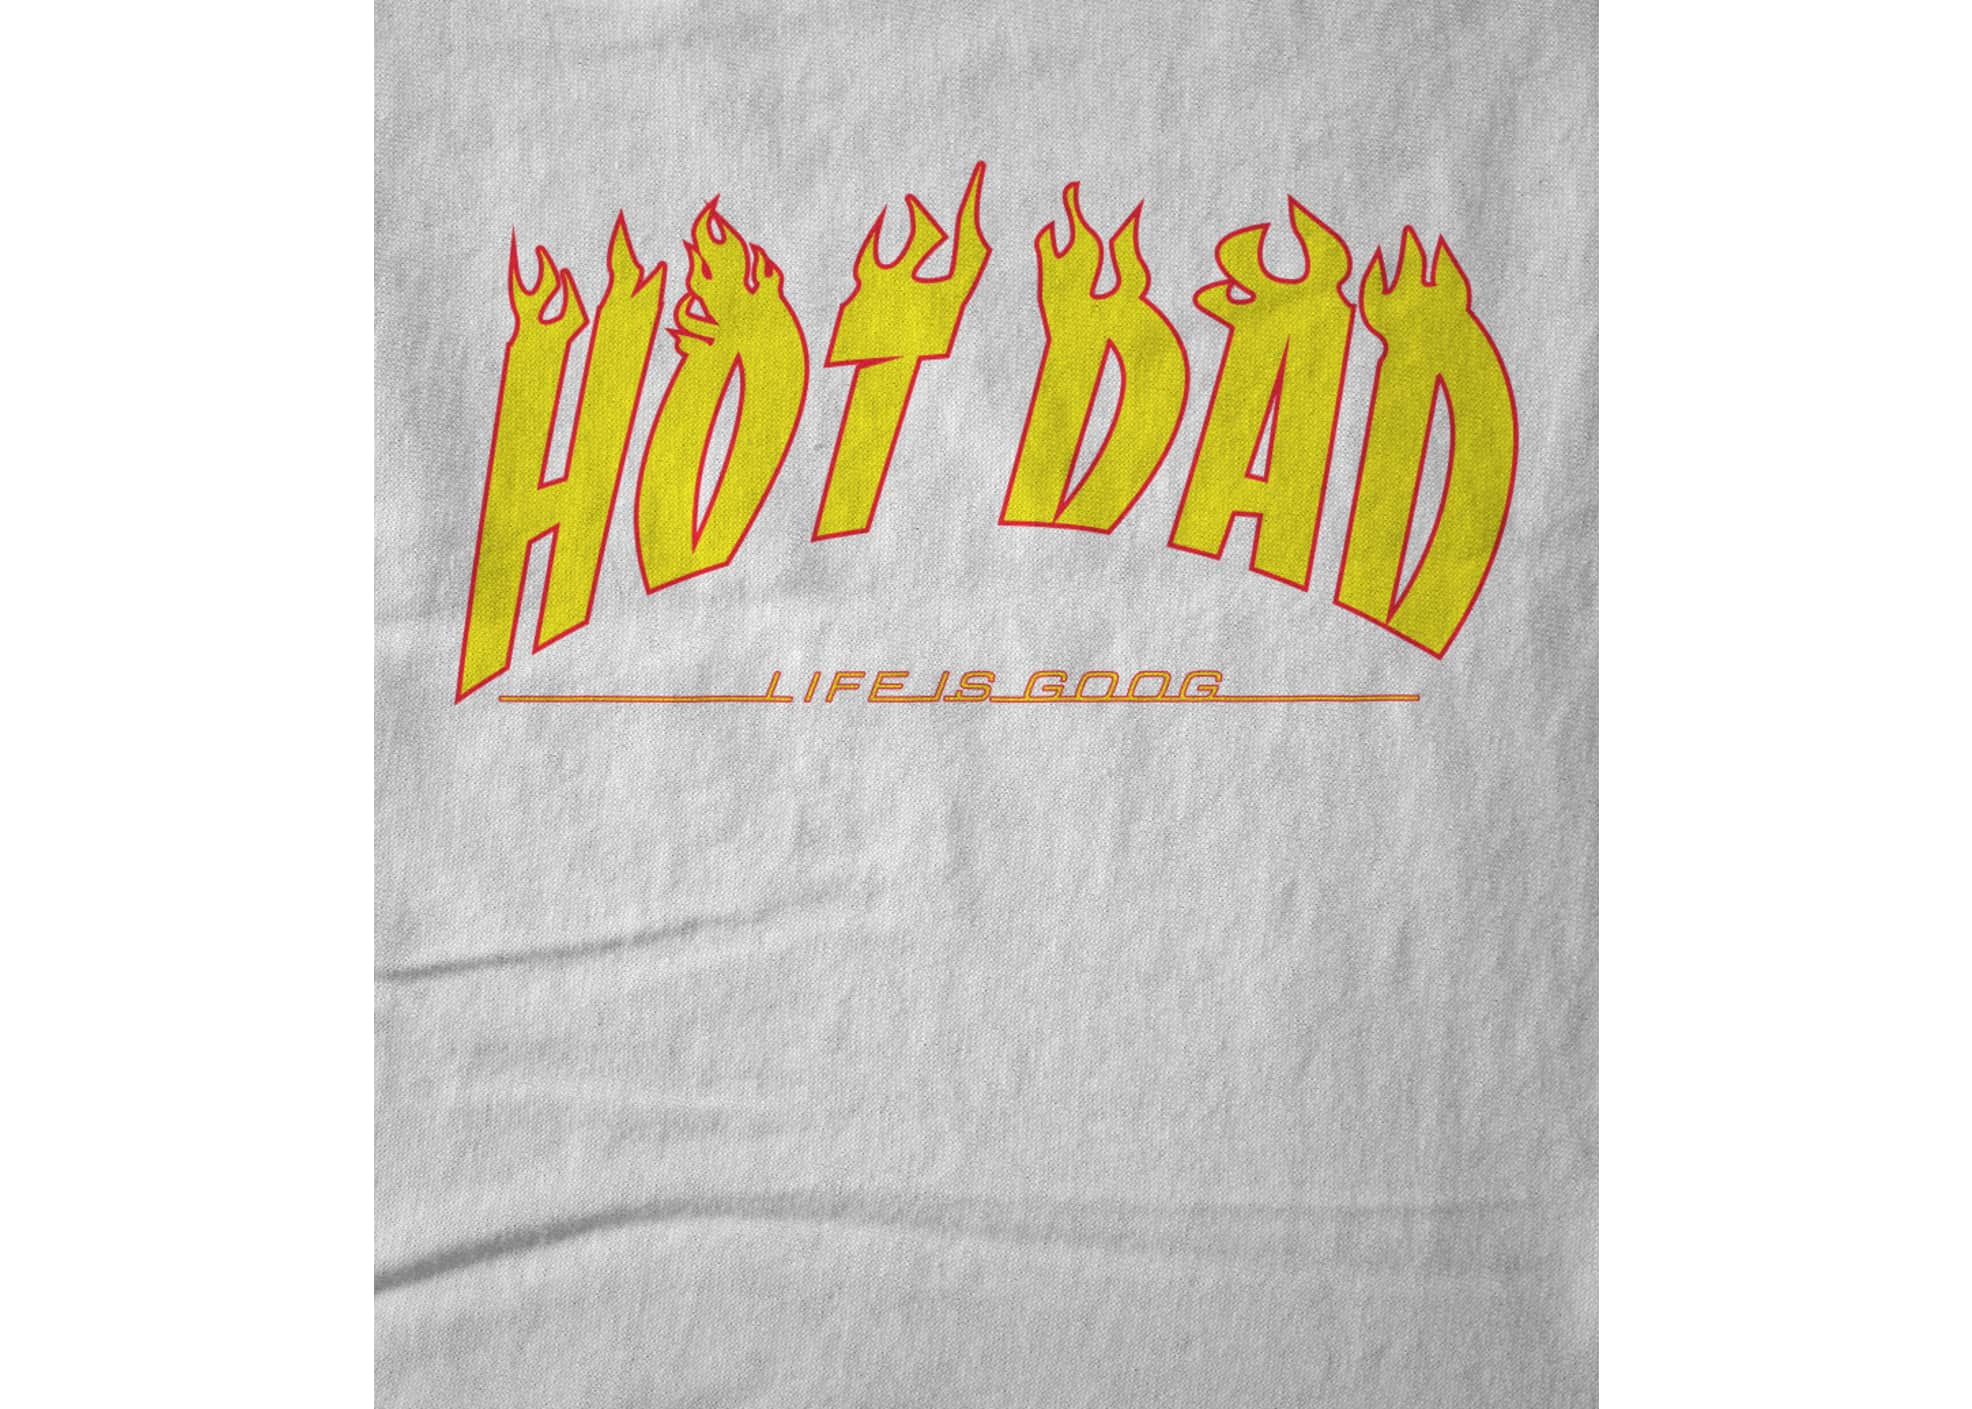 Hot dad thrash dad  black  1510525552